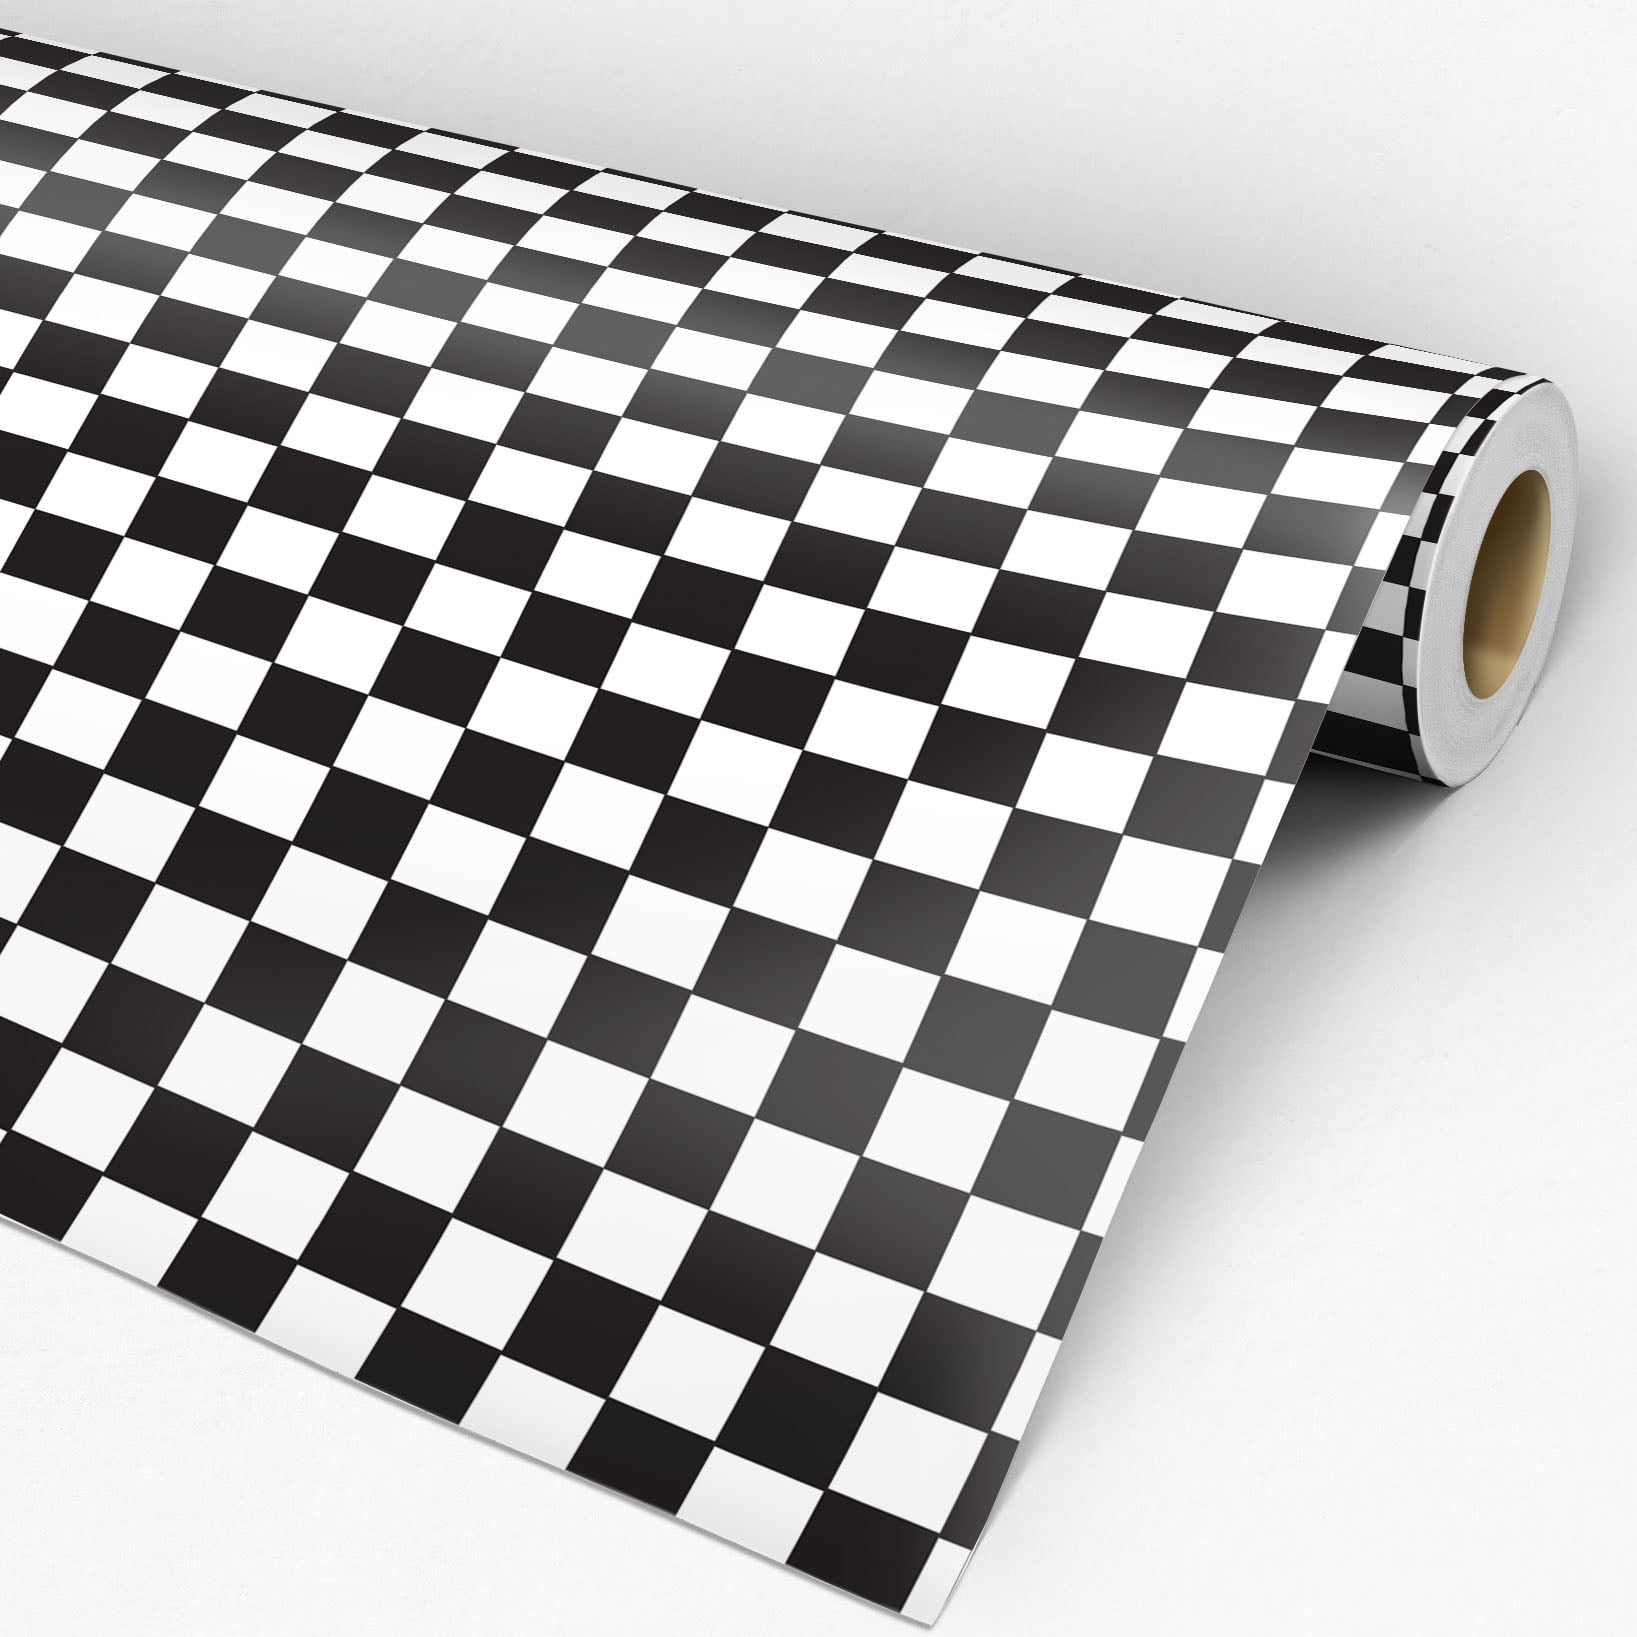 Papel principal do padrão de Xadrez preto e branco